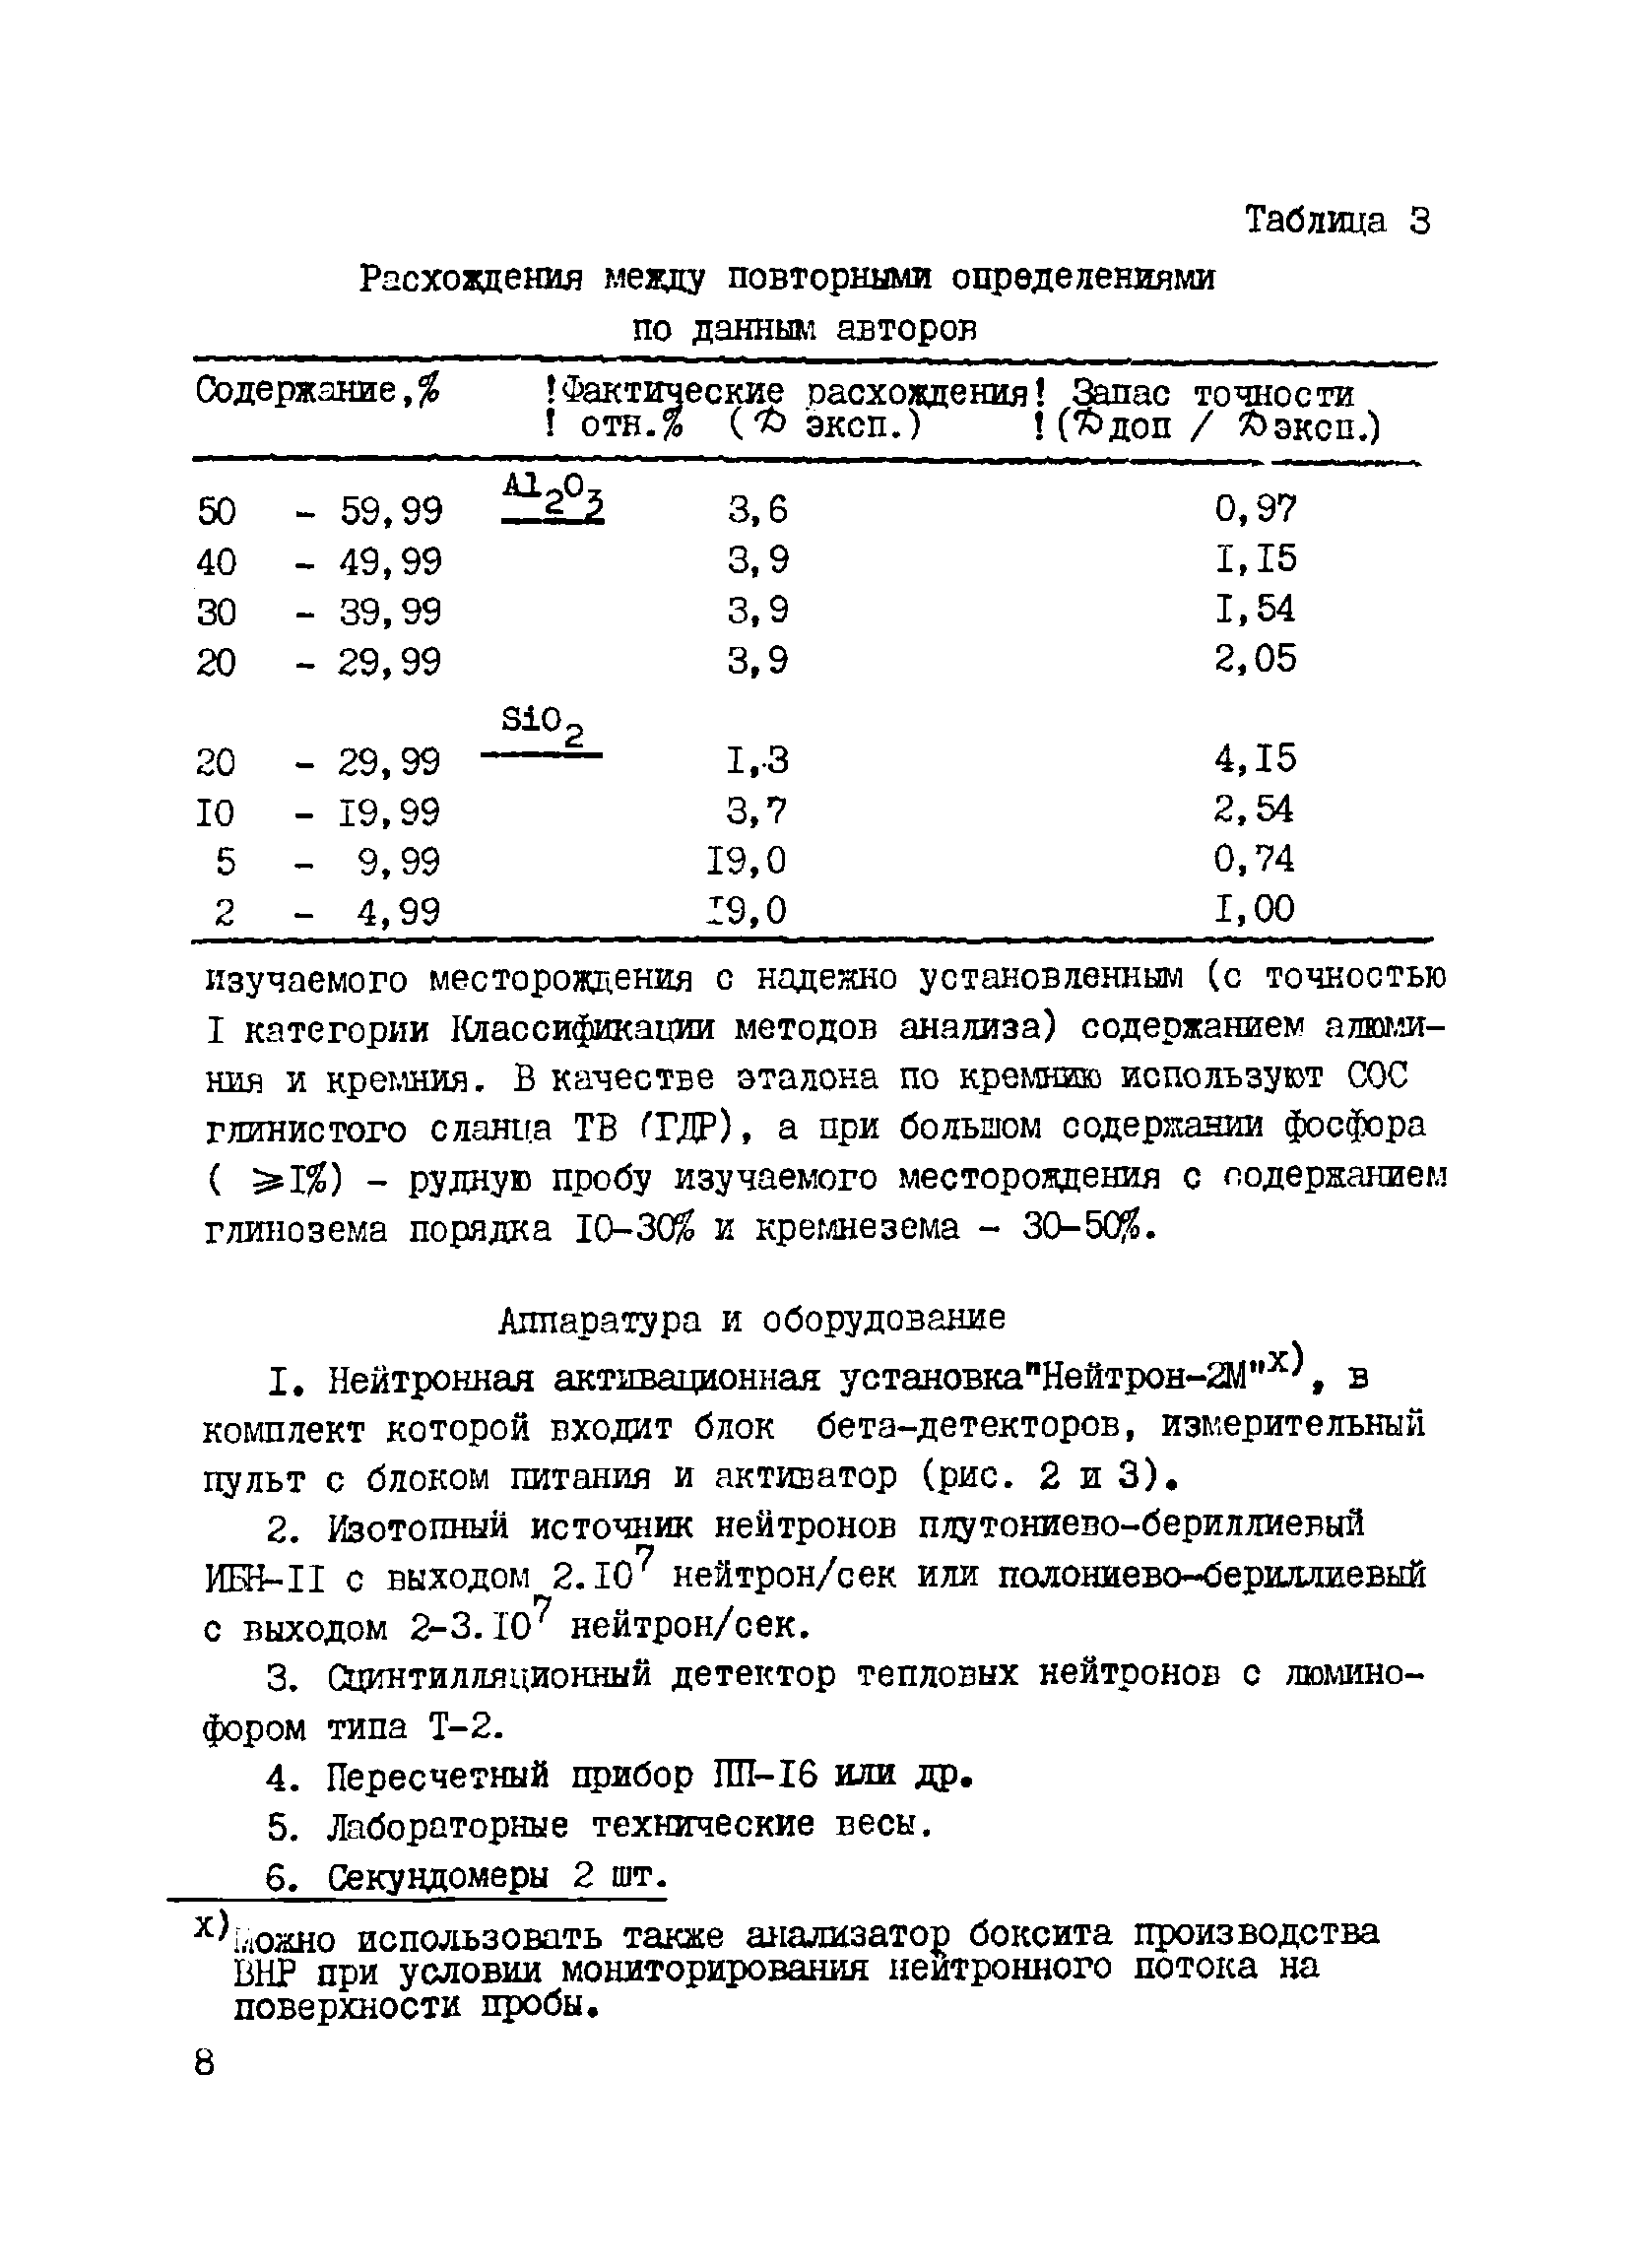 Инструкция НСАМ 152-ЯФ